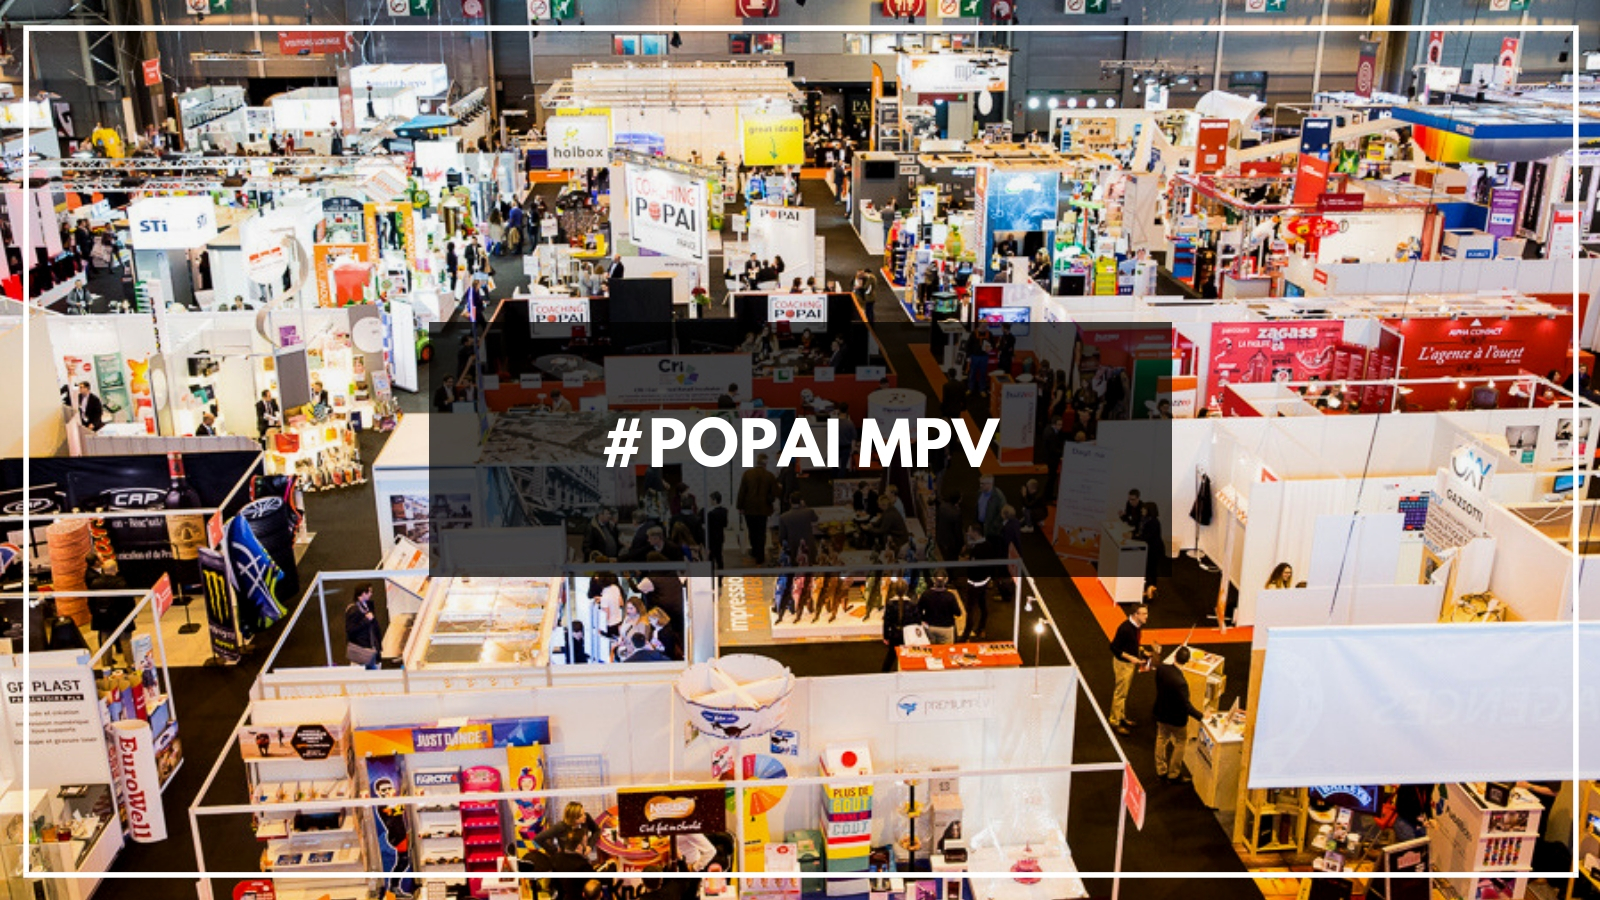 Report en 2021 du salon MPV (Marketing Point de Vente) et du Concours POPAI AWARDS PARIS